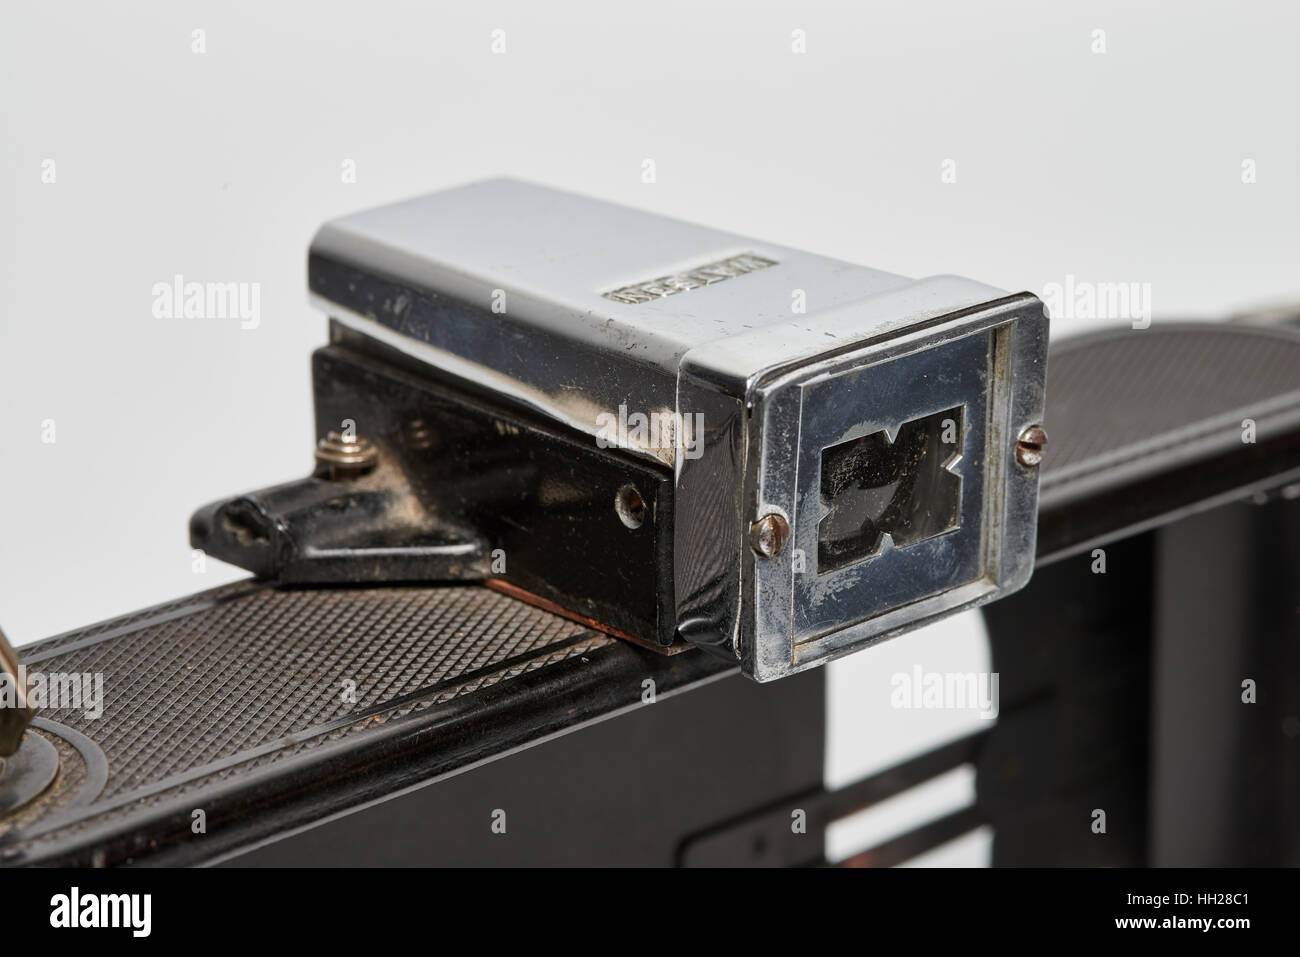 1A KODAK Autographyc plegable de bolsillo especial cámara de película analógica Foto de stock